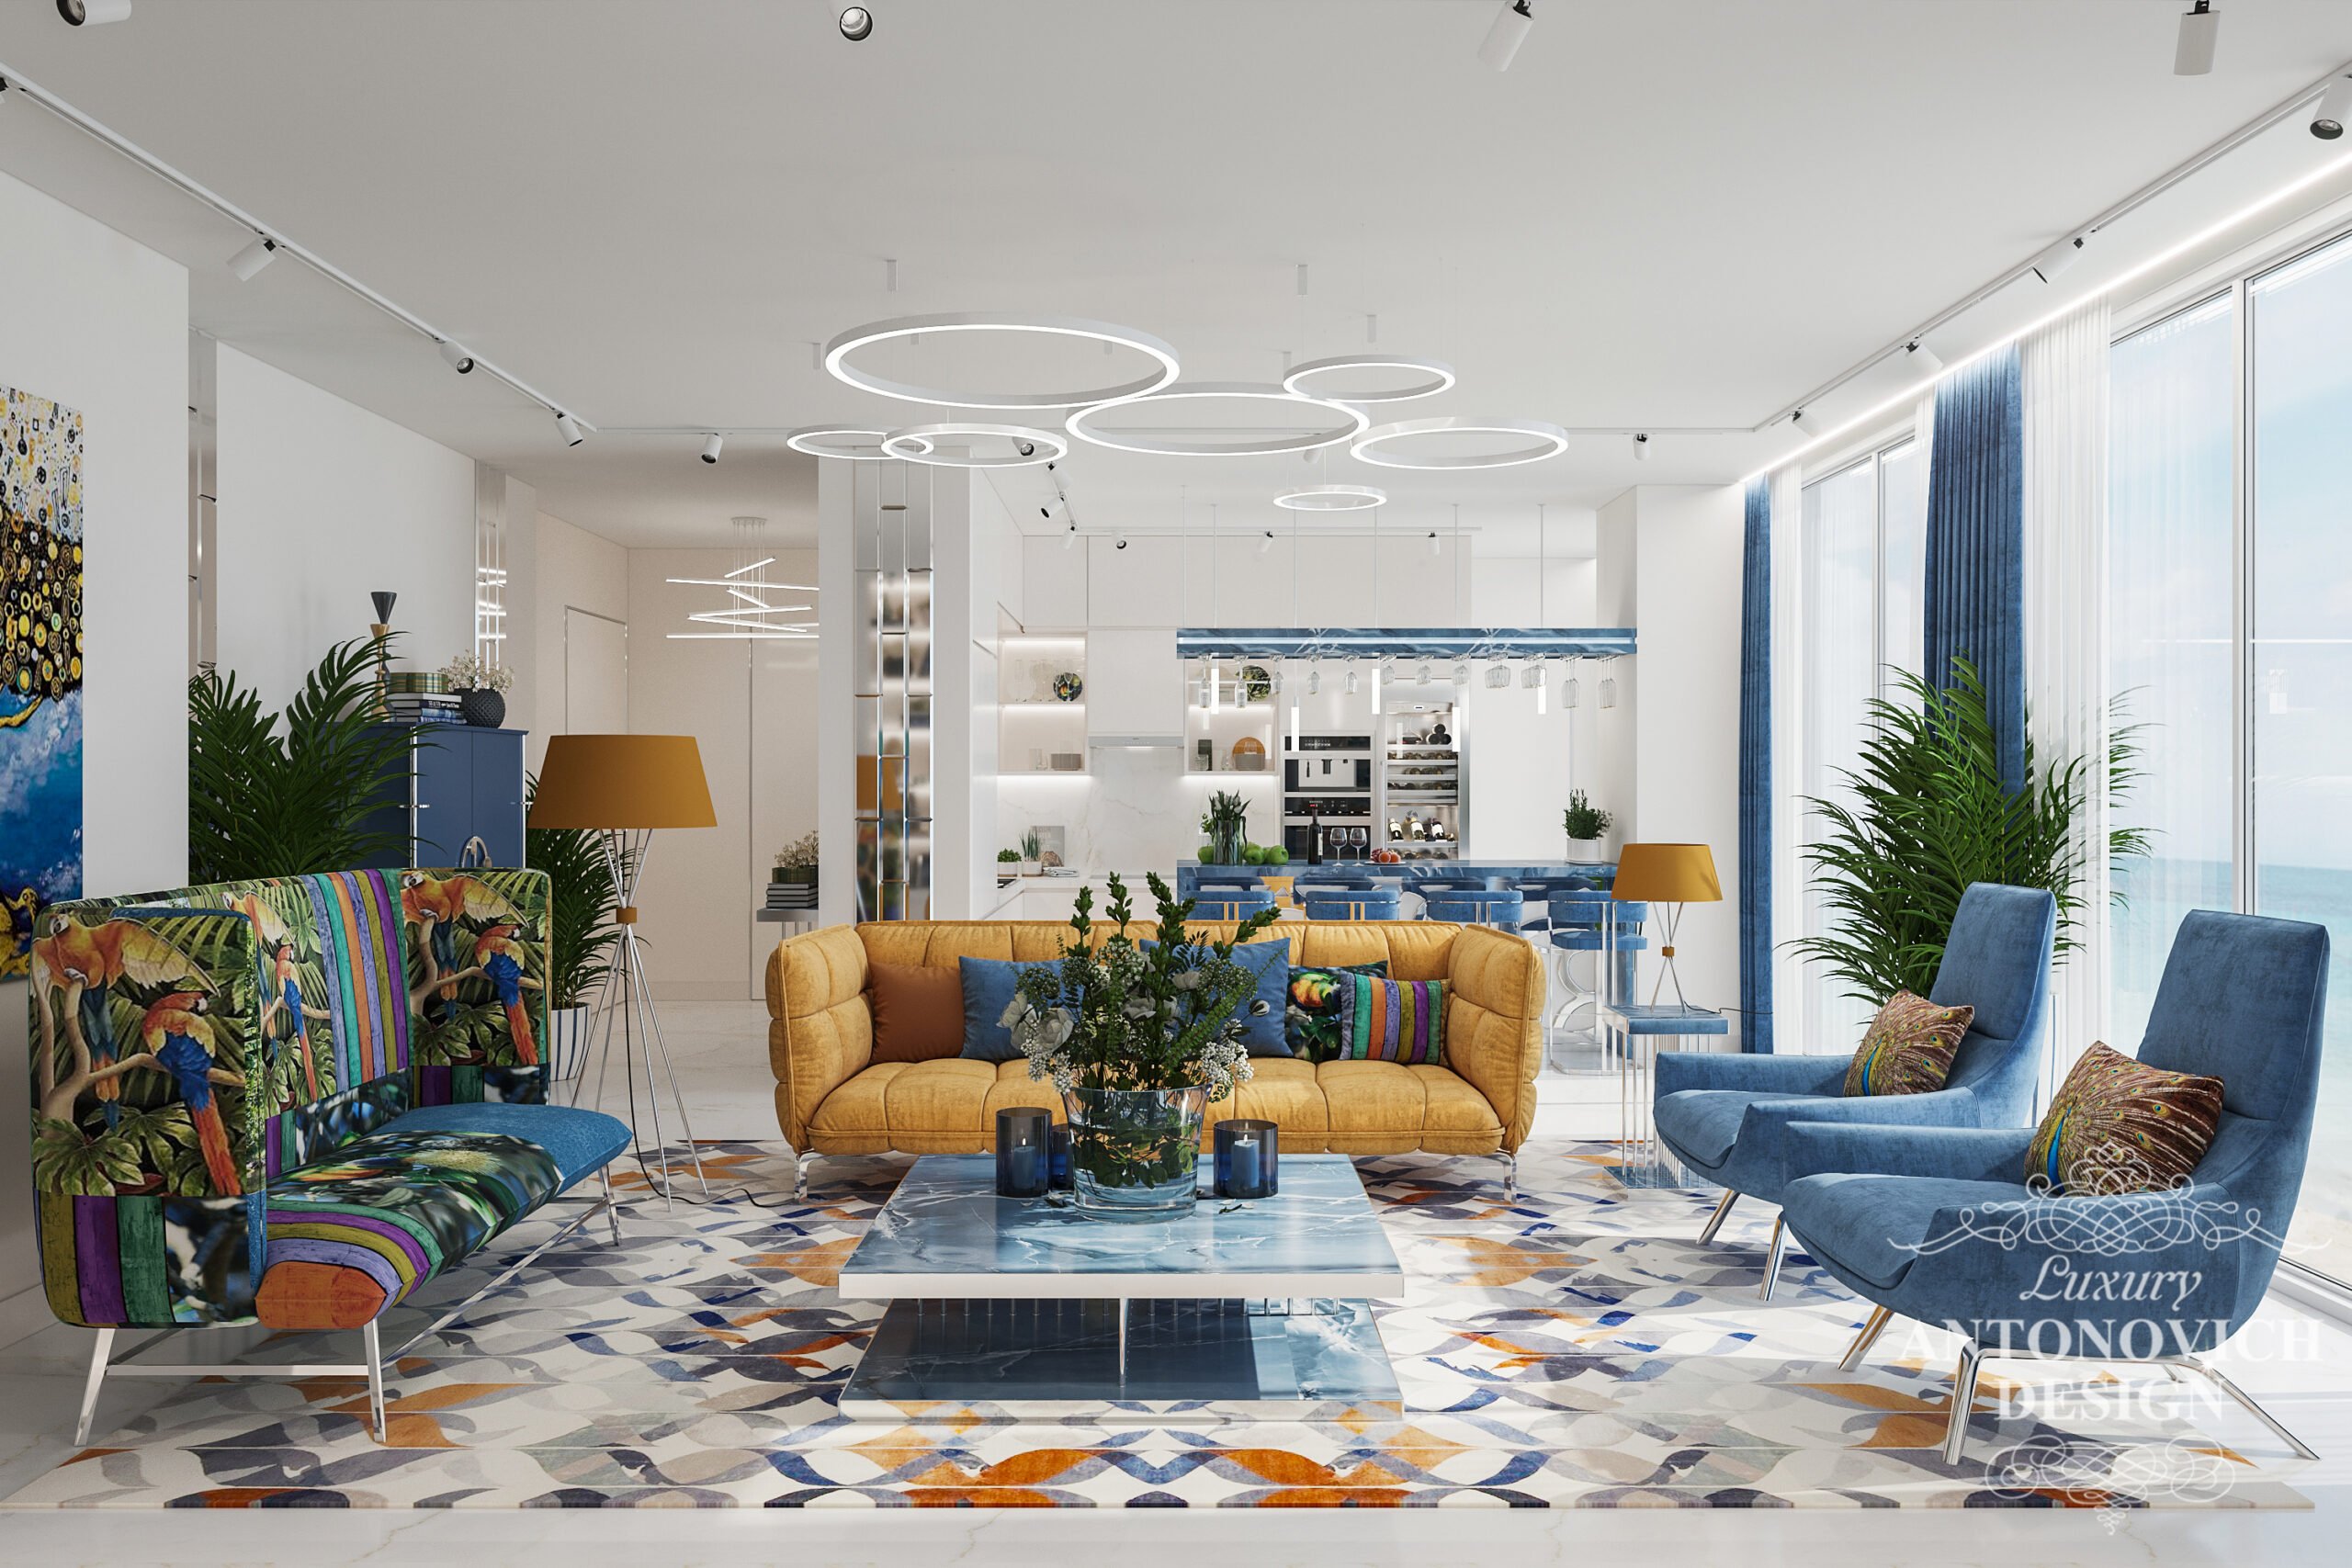 Дизайн светлой большой квартиры в средиземноморском стиле с яркими уютными акцентами